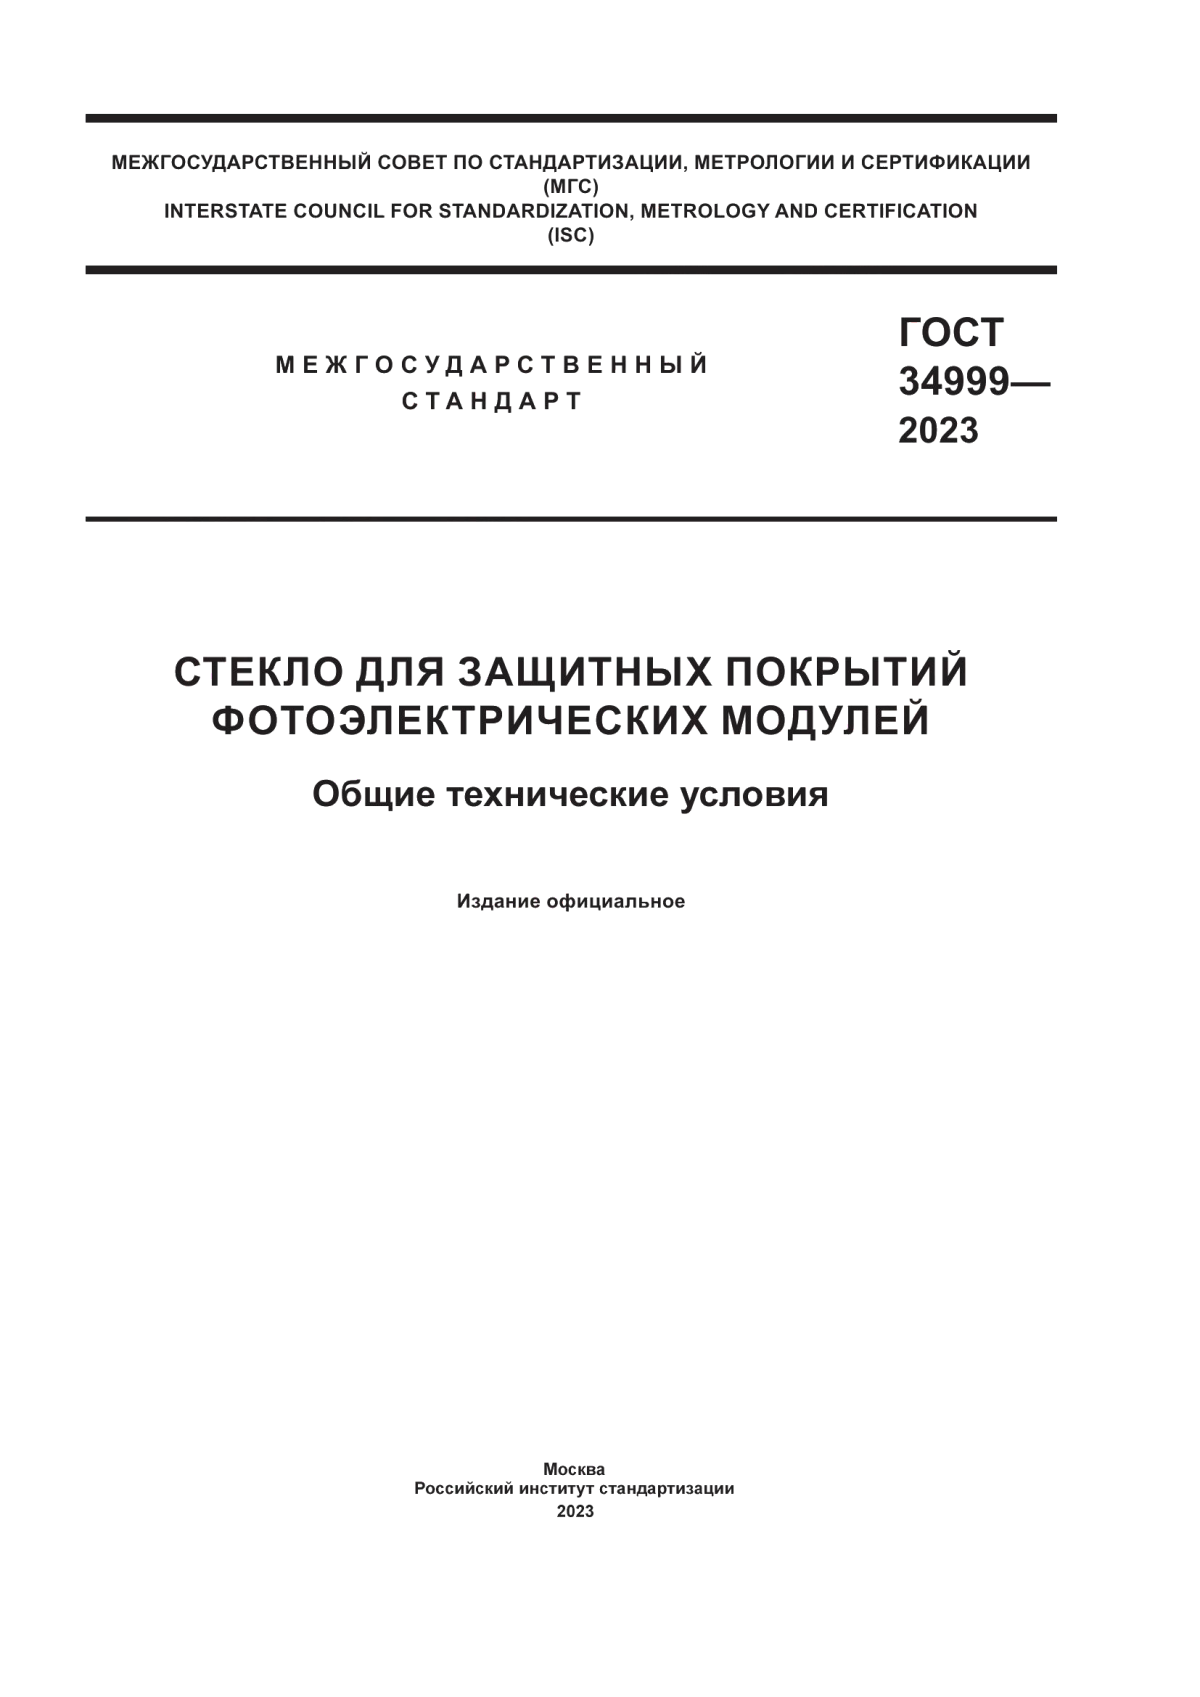 ГОСТ 34999-2023 Стекло для защитных покрытий фотоэлектрических модулей. Общие технические условия